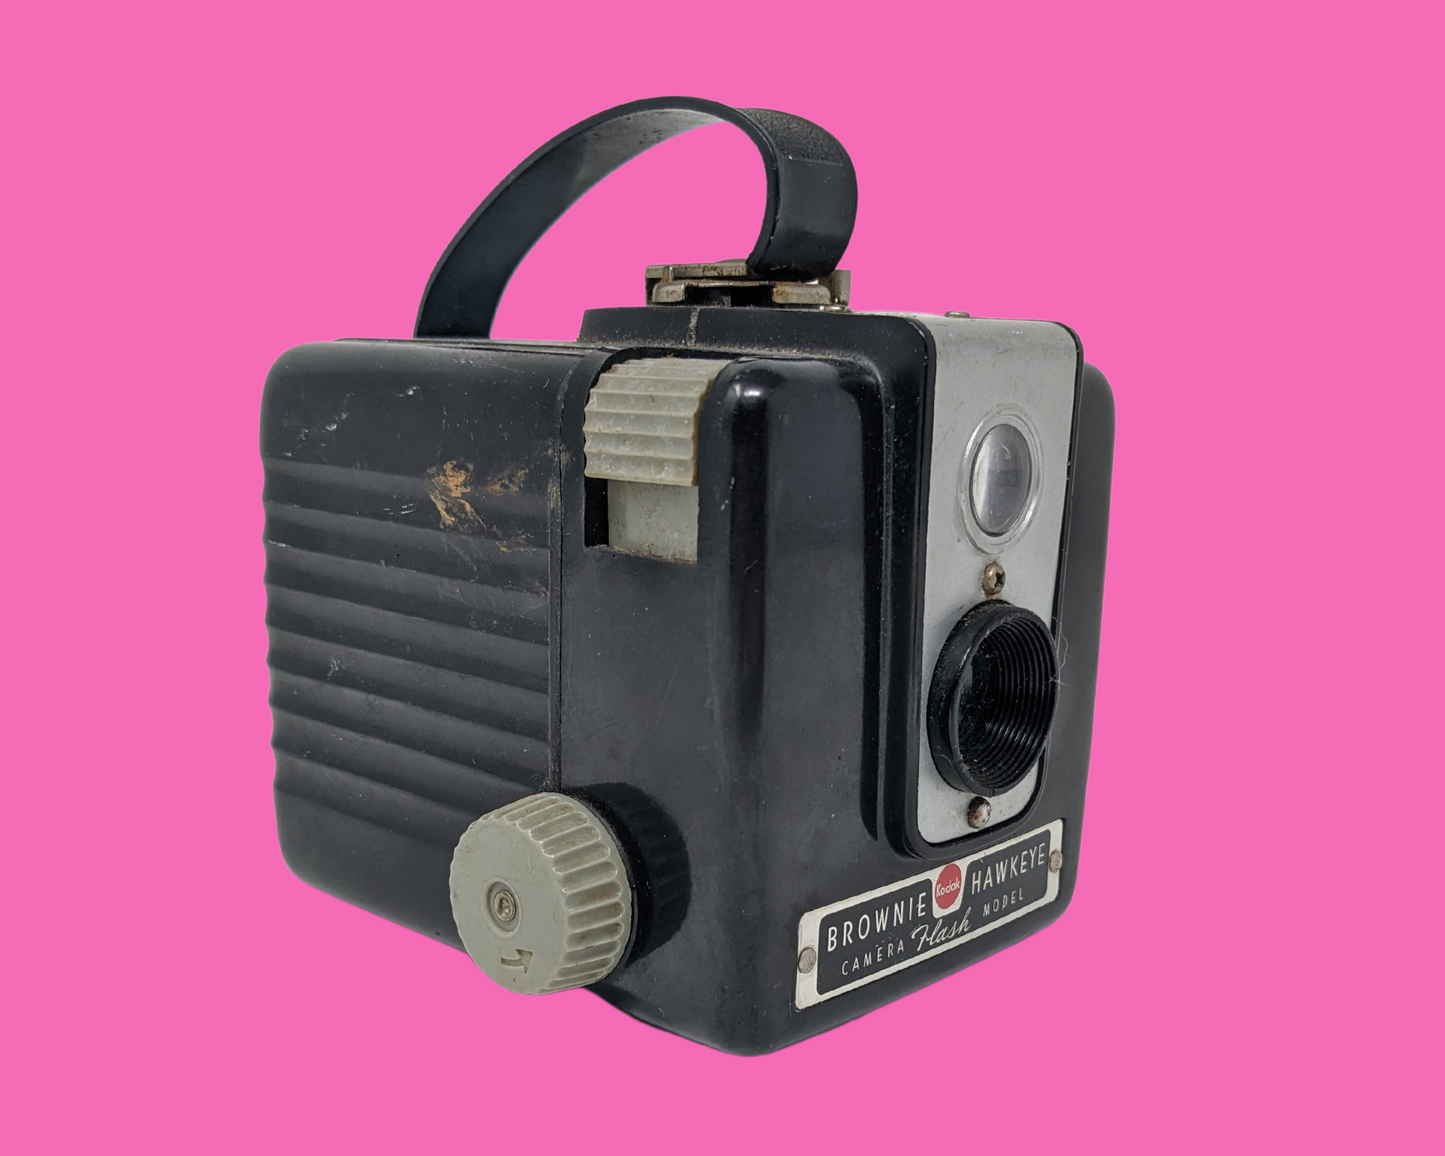 Modèle de flash d'appareil photo Brownie Kodak Hawkeye vintage des années 1950